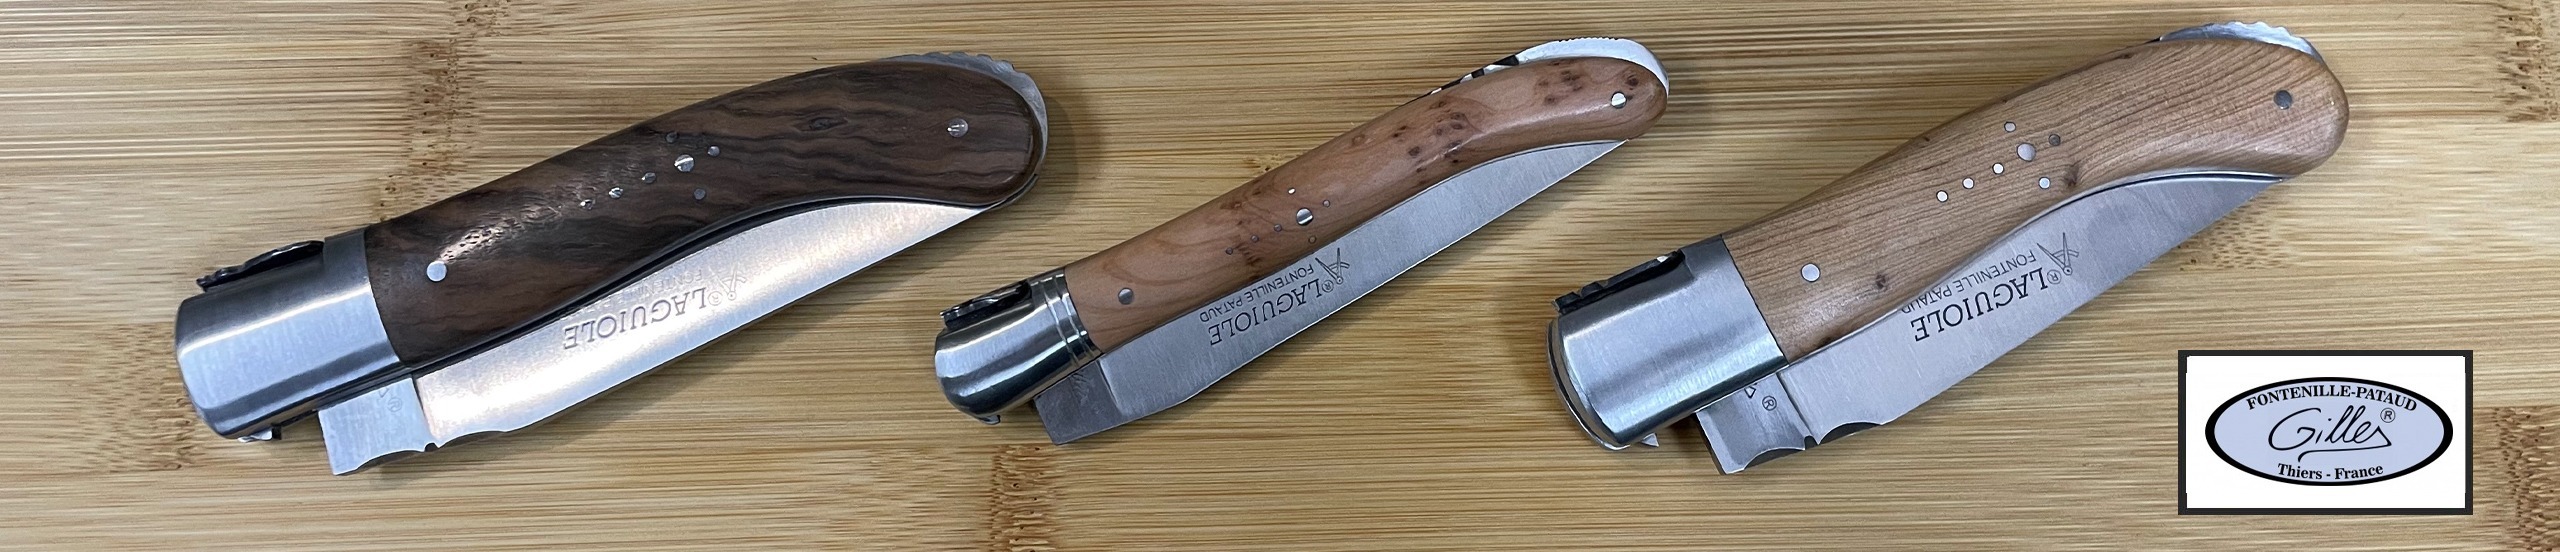 Atelier d'affûtage et entretien de couteaux dans les Vosges